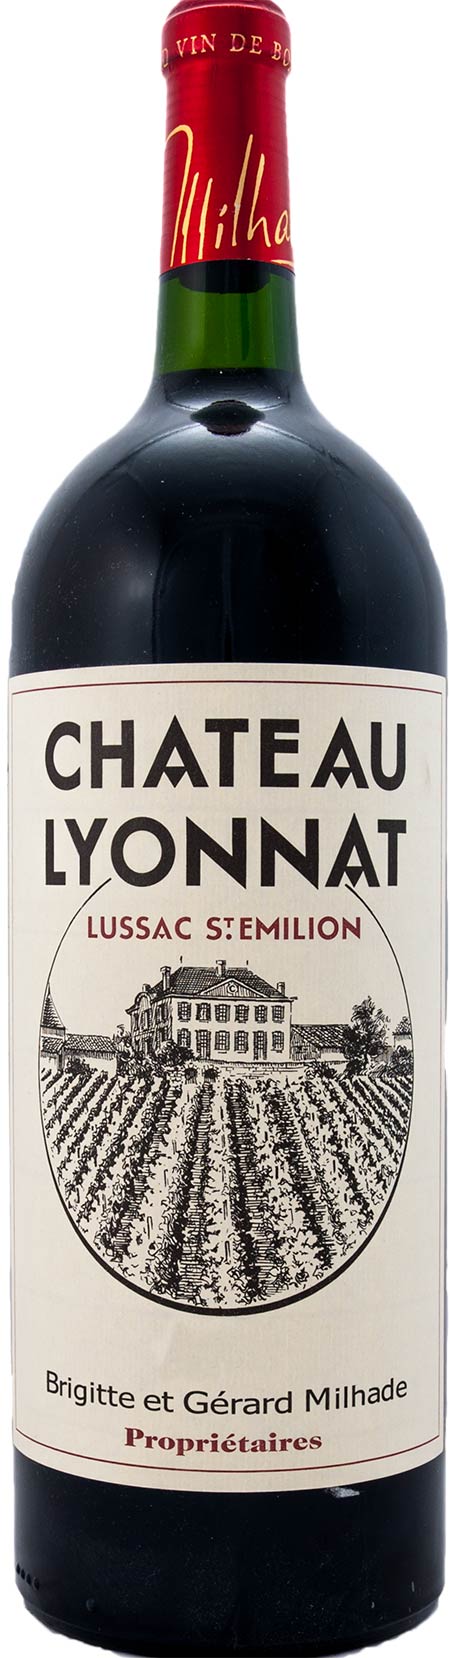 Château Lyonnat, JEROBOAM Lussac Saint-Émilion